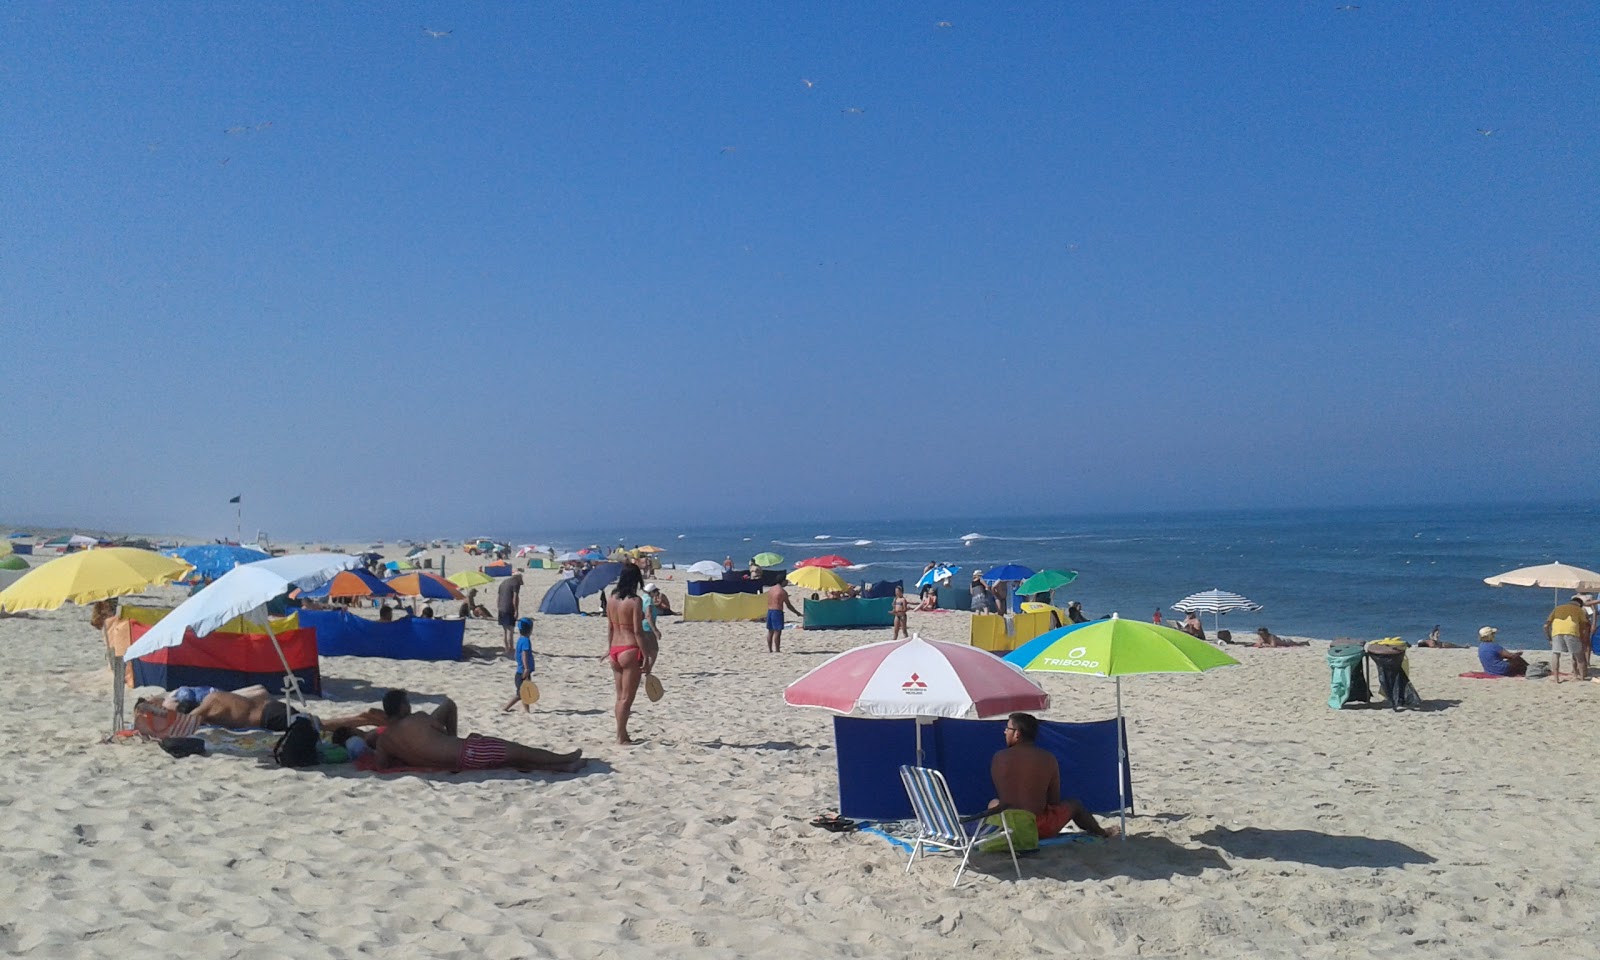 Foto von Praia de Mira mit langer gerader strand